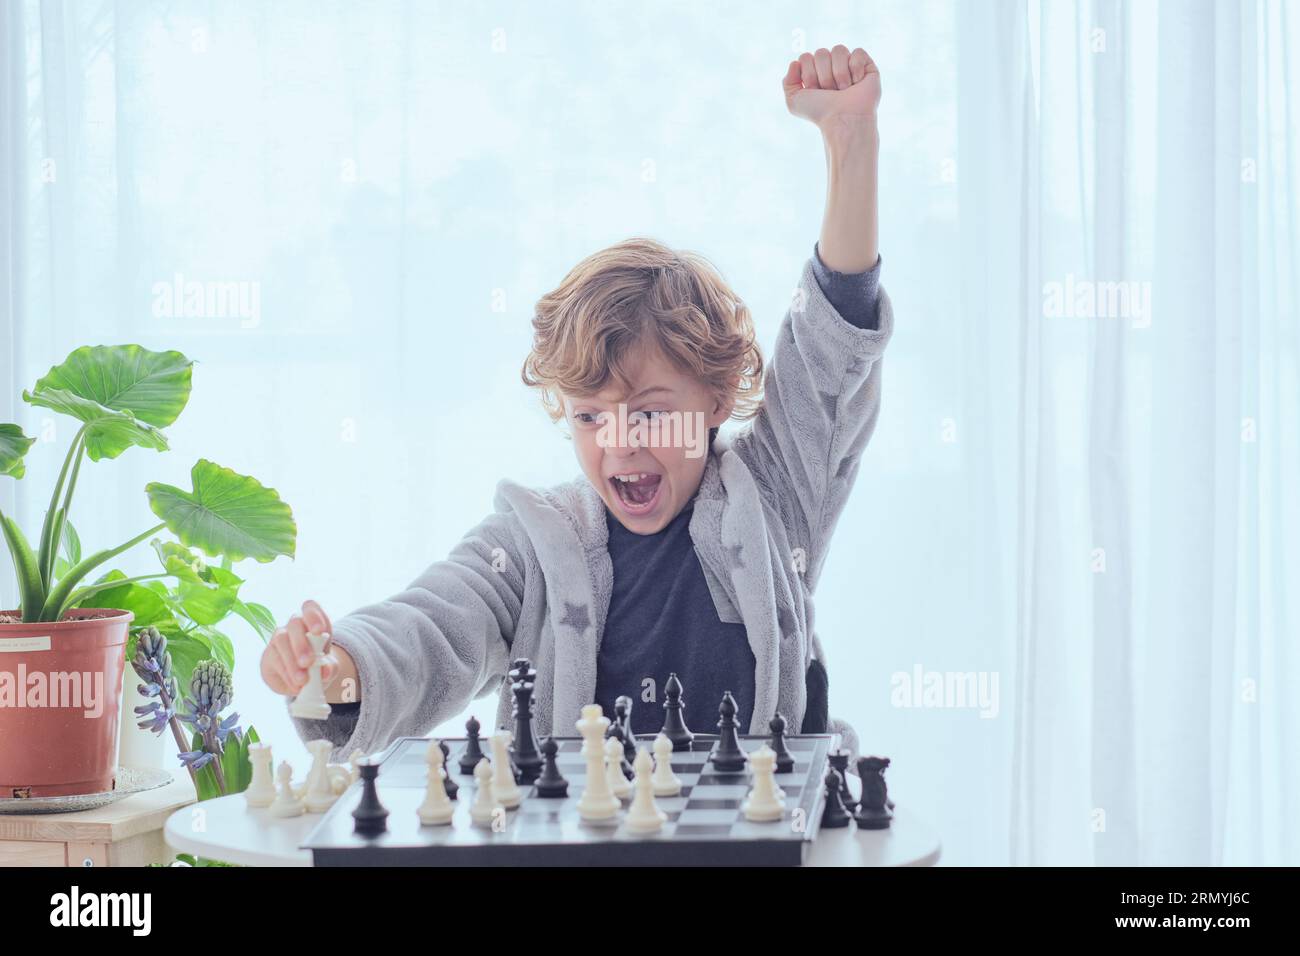 Glücklicher junger Junge, der Schachkamerad macht und mit erhobener Hand eine Faust-nach-oben-Geste zeigt, während er das Schachspiel gewinnt Stockfoto